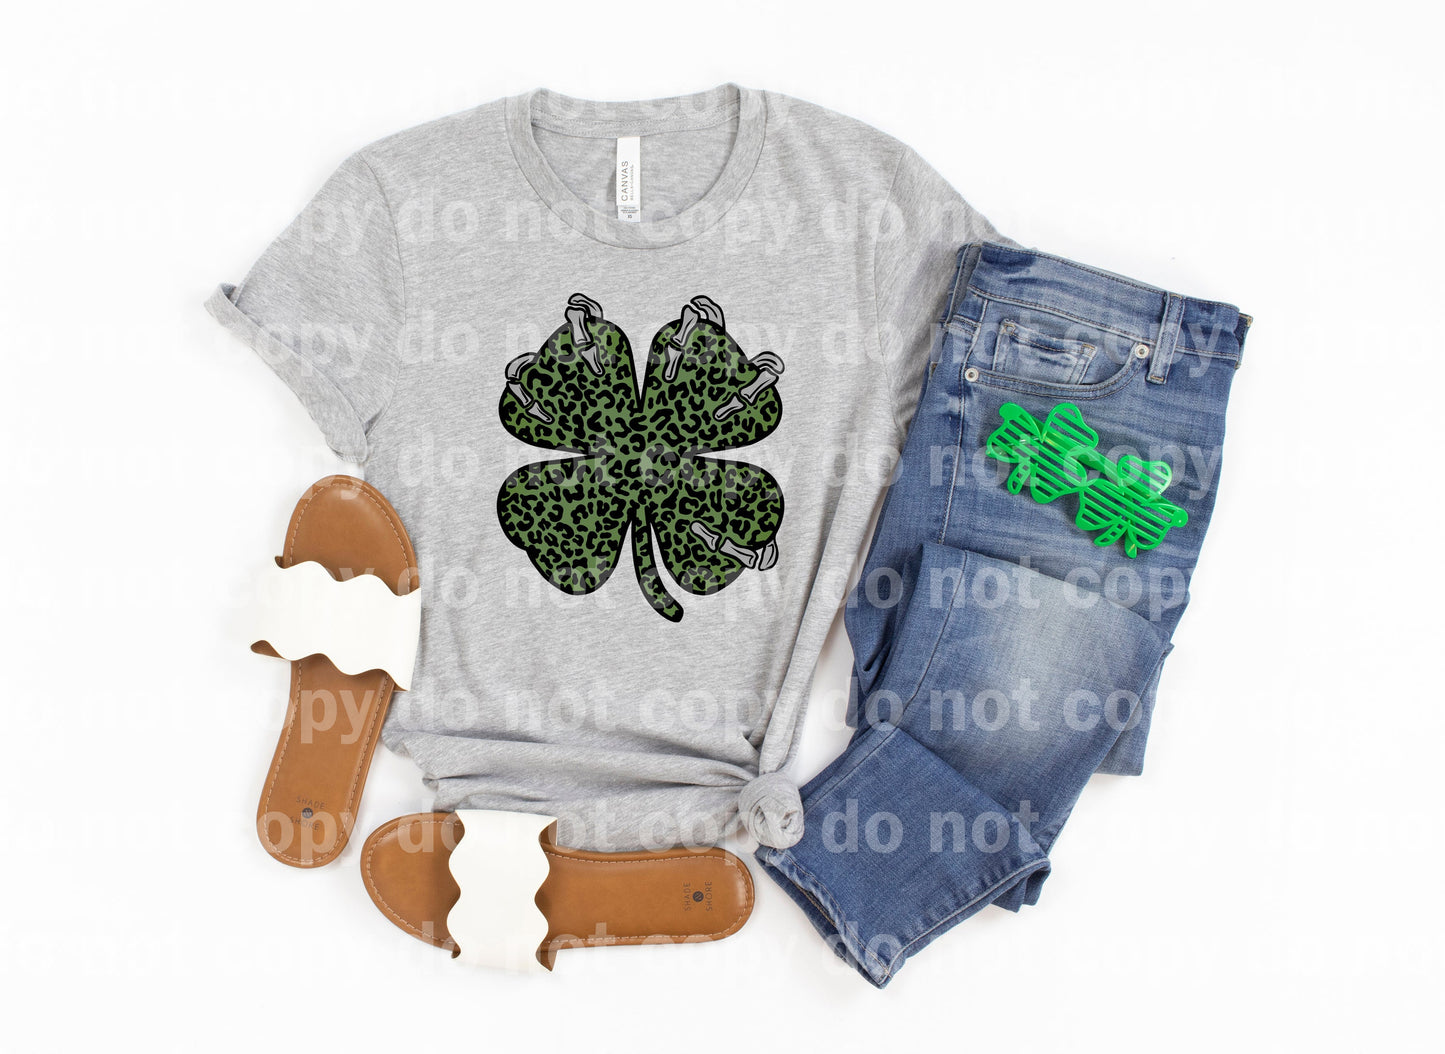 Clover Leaf Skellie Leopard Print Full Color/One Color Dream Print or Sublimation Print